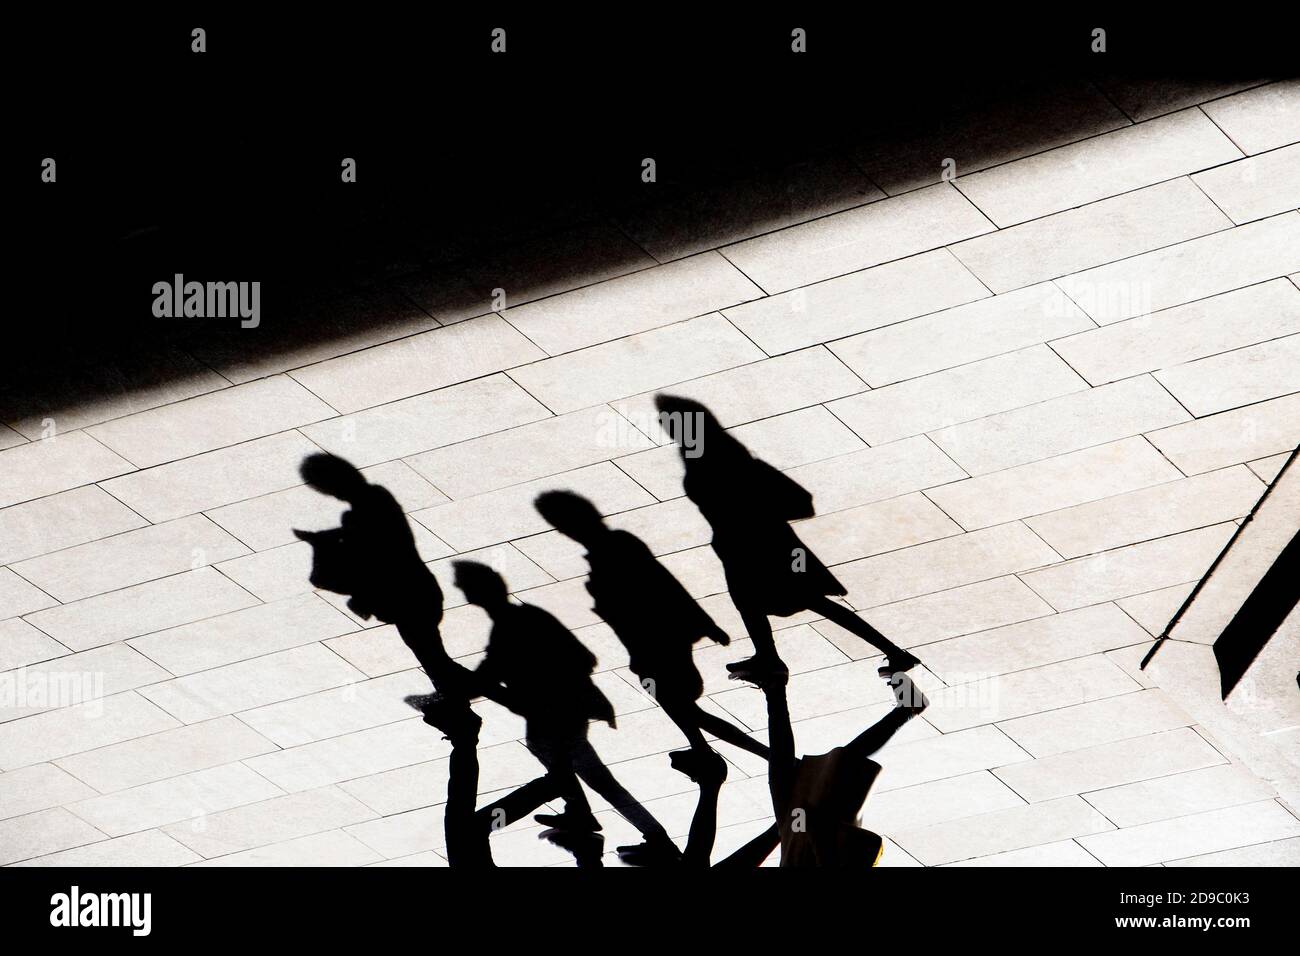 Arrière-plan abstrait silhouette d'ombre de quatre personnes marchant sur le trottoir de la ville, dans le contraste élevé noir et blanc Banque D'Images